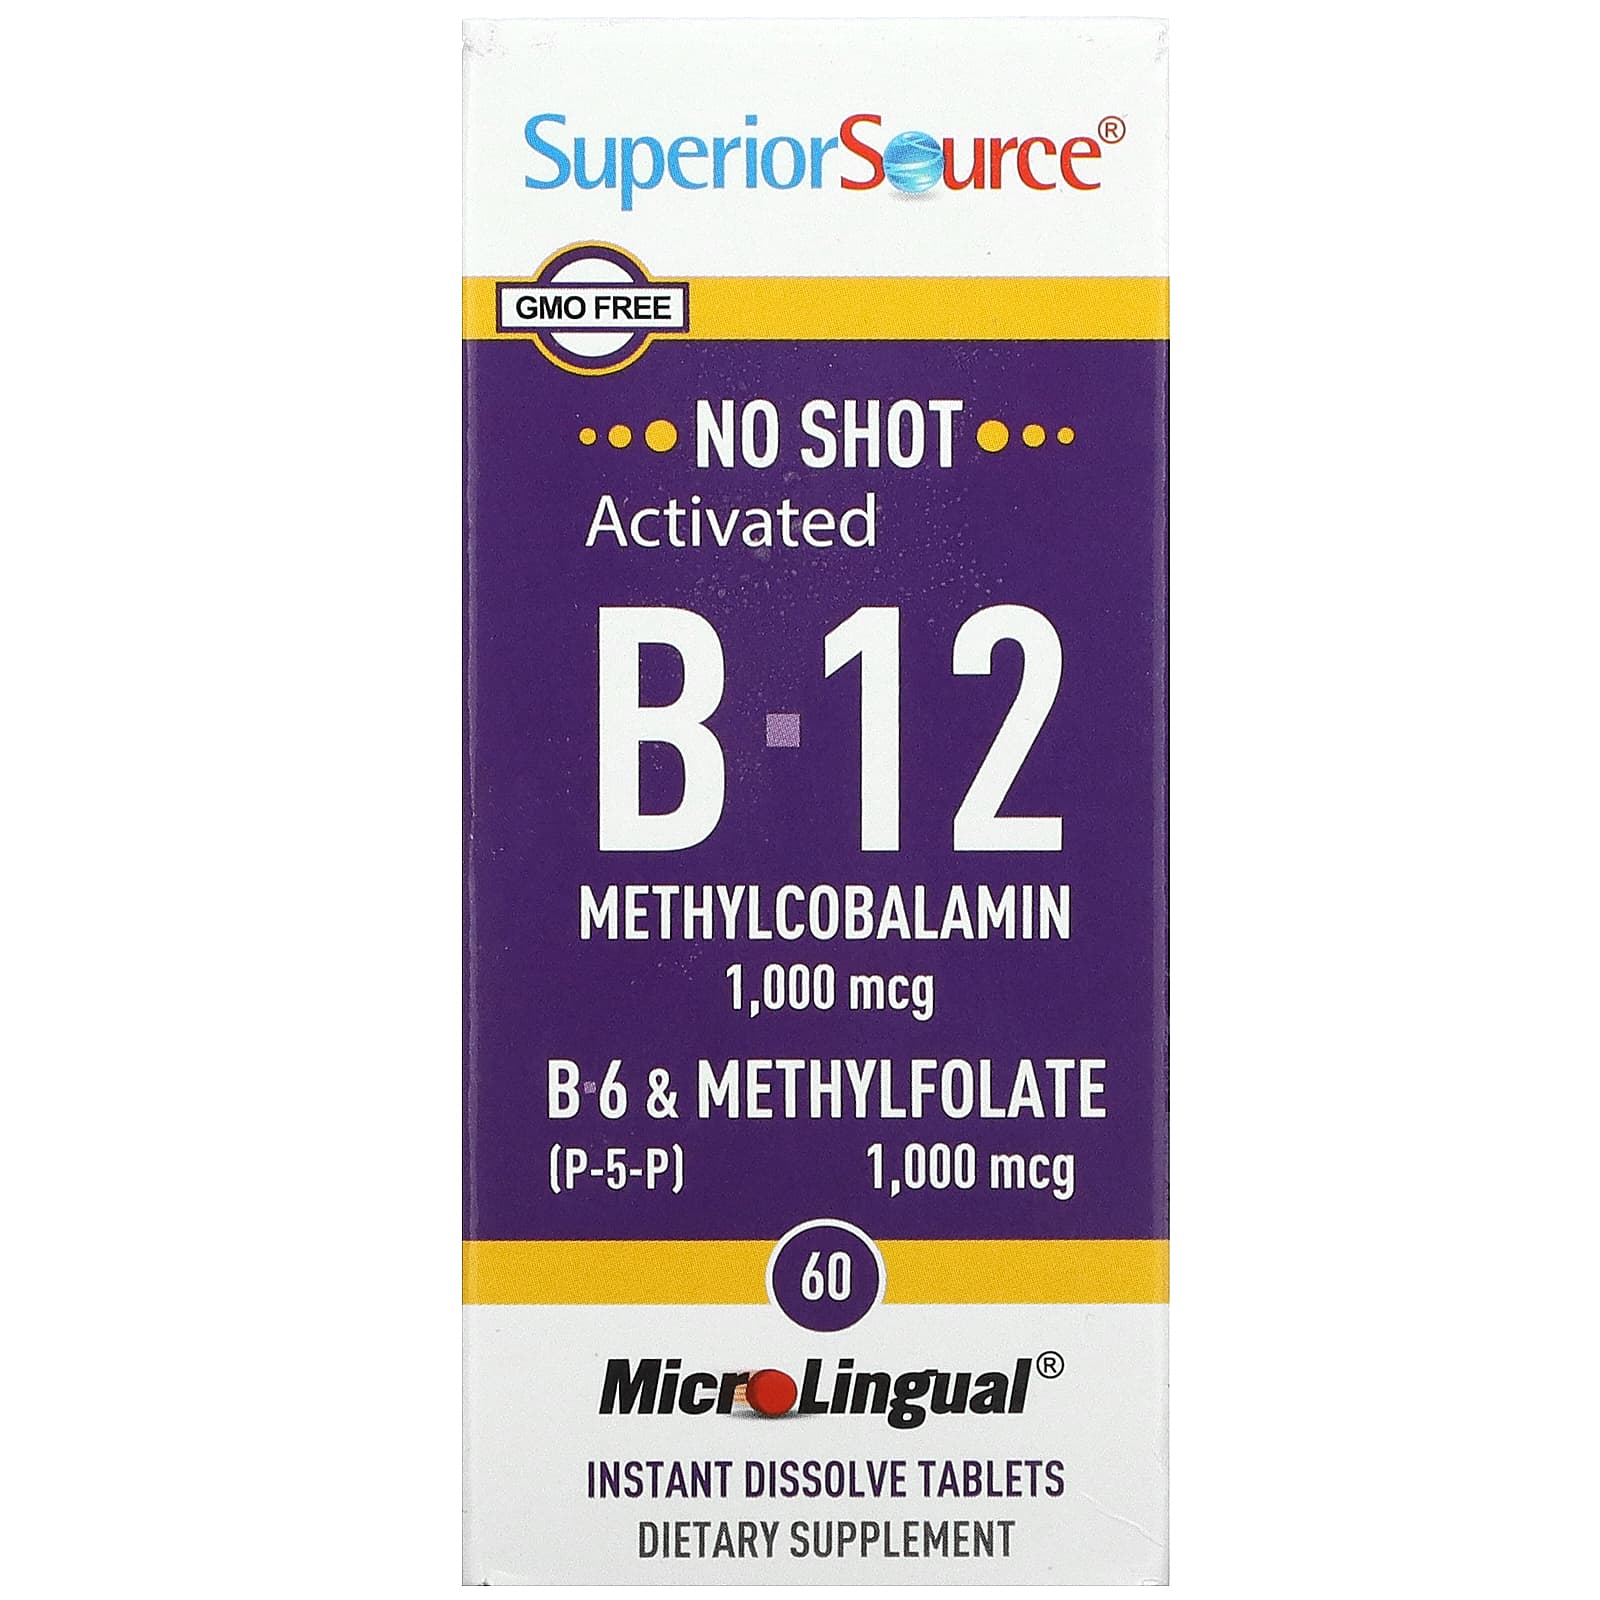 Superior Source Активированный B-12 метилкобаламин B-6 (пиридоксин) и метилфолат 1,000 мкг / 1,000 мкг 60 микролингвальных быстрорастворимых таблеток superior source метилкобаламин b12 5000 мкг 60 микролингвальных таблеток